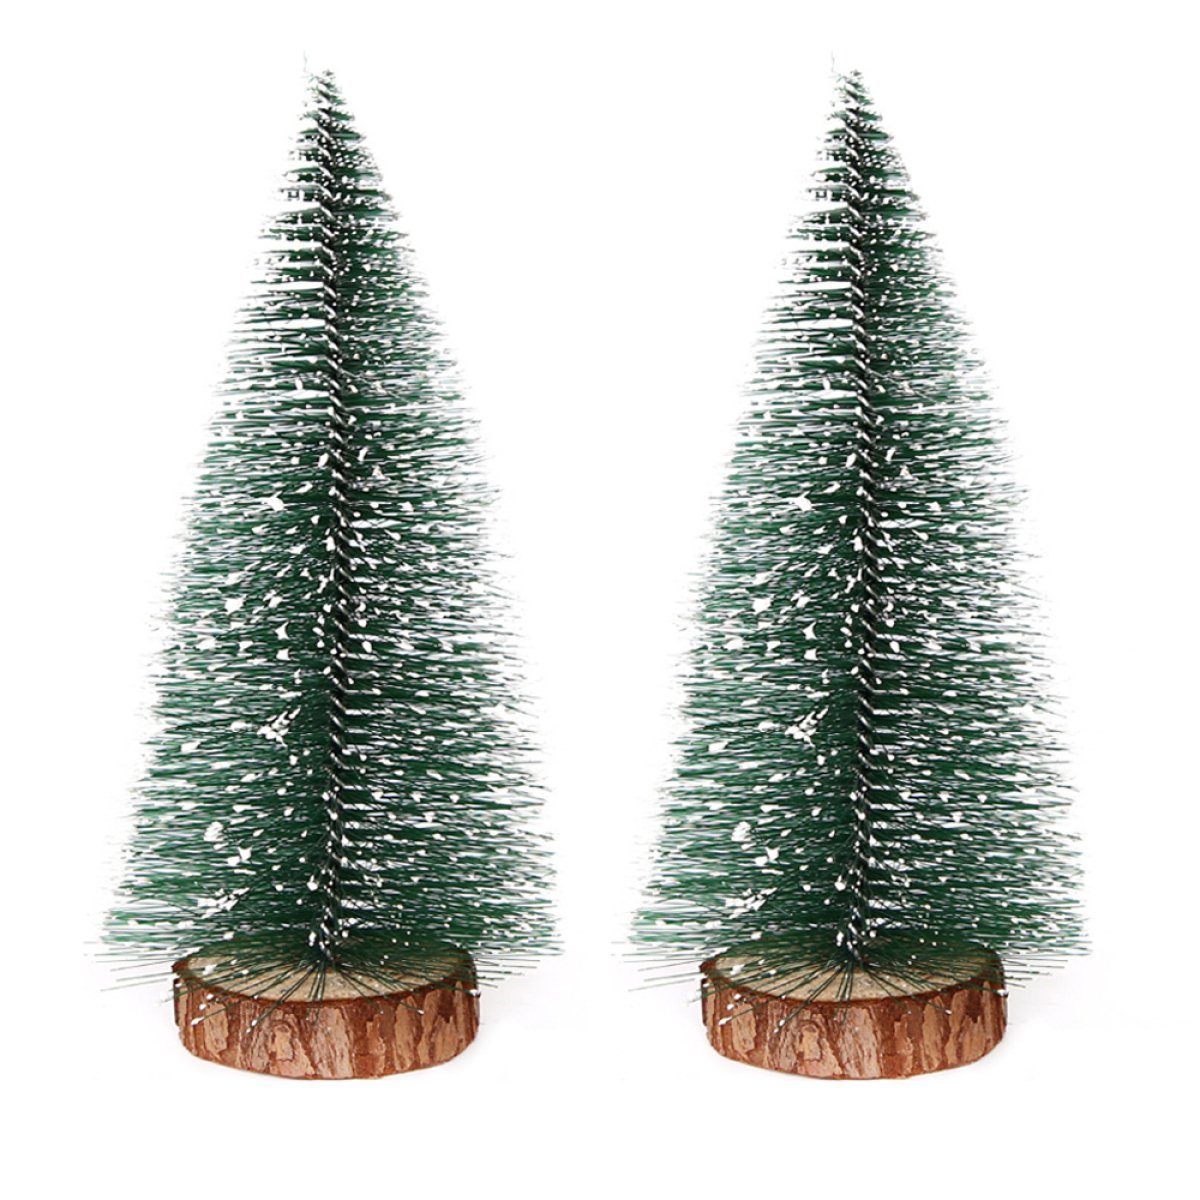 Tannenbaum kleiner Baumdekoration Holzsockel Zeaicos mit Mini-Weihnachtsbaum, Hänge-Weihnachtsbaum